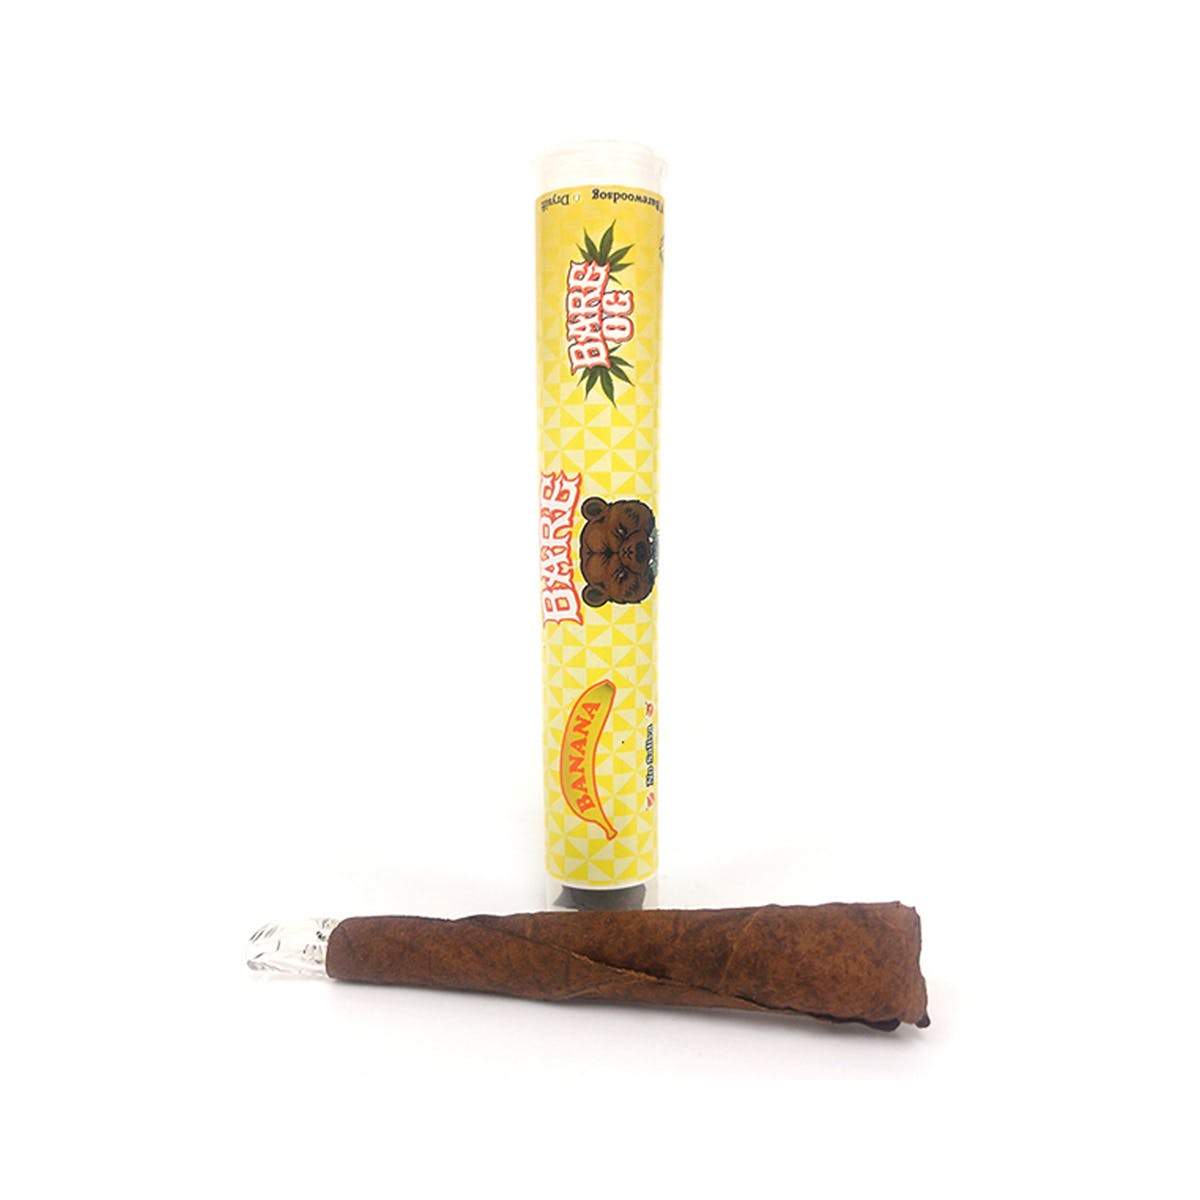 marijuana-dispensaries-pure-life-in-pasadena-barewoods-limited-edition-banana